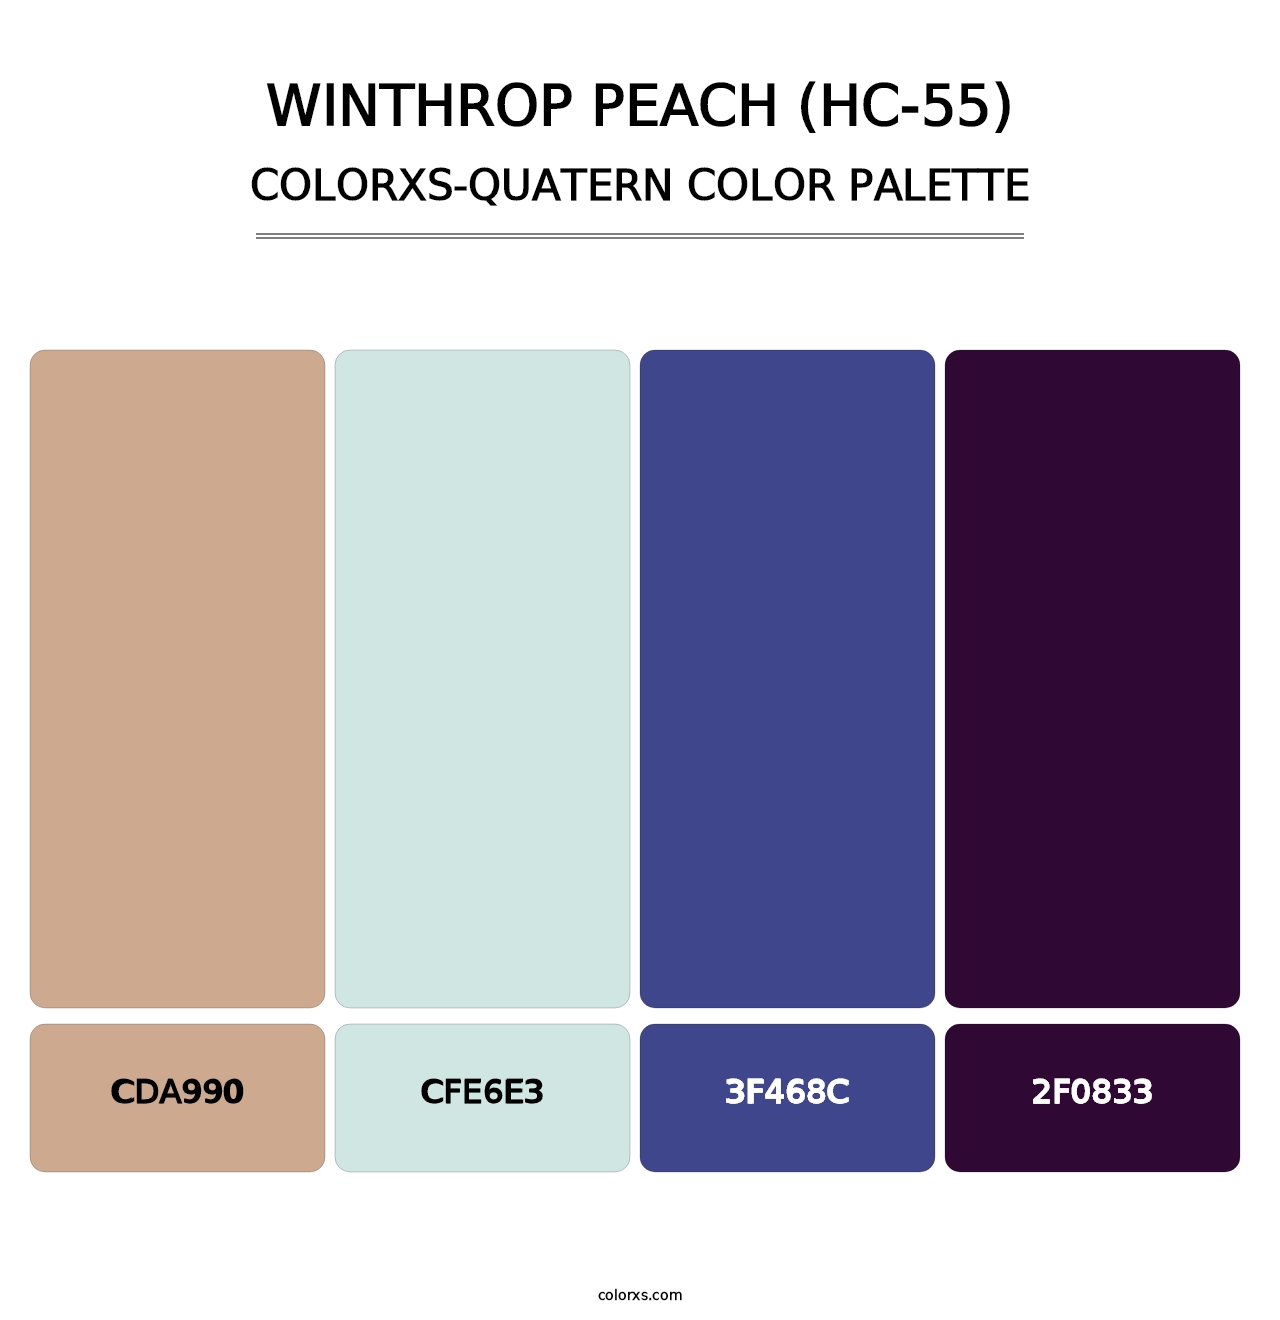 Winthrop Peach (HC-55) - Colorxs Quatern Palette